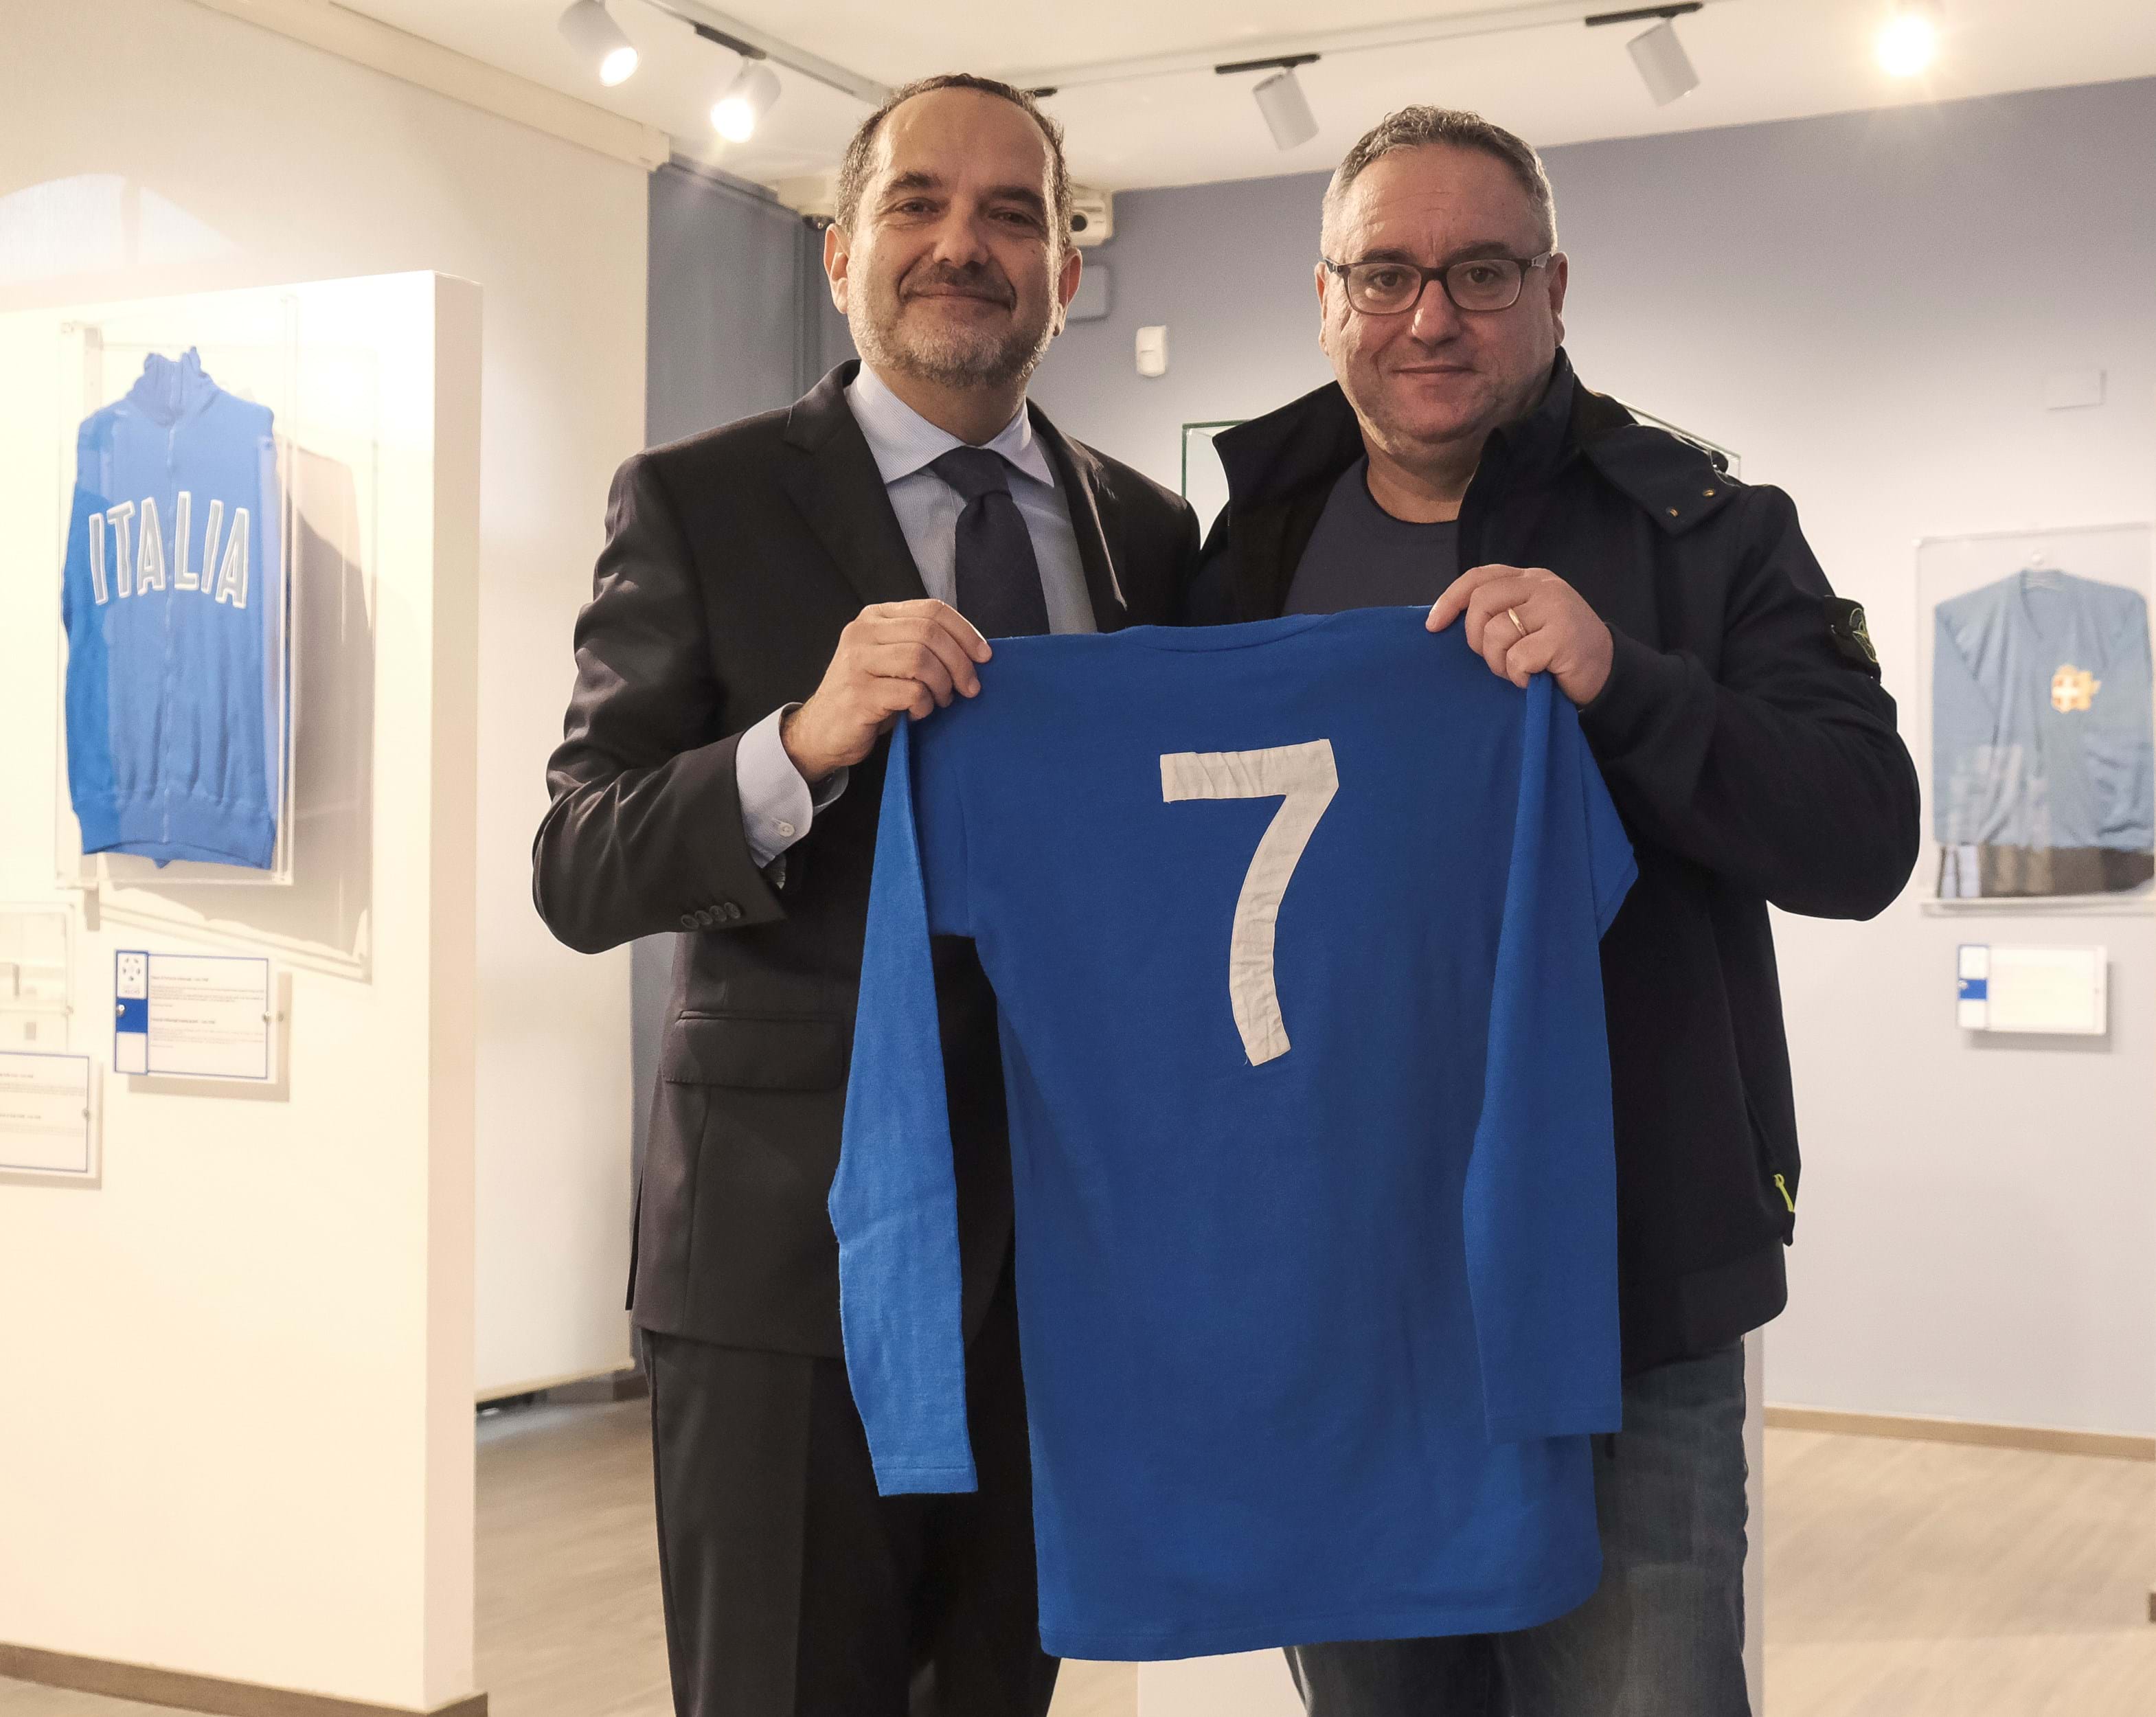 Grande Torino side becomes part of the Museo del Calcio in Coverciano